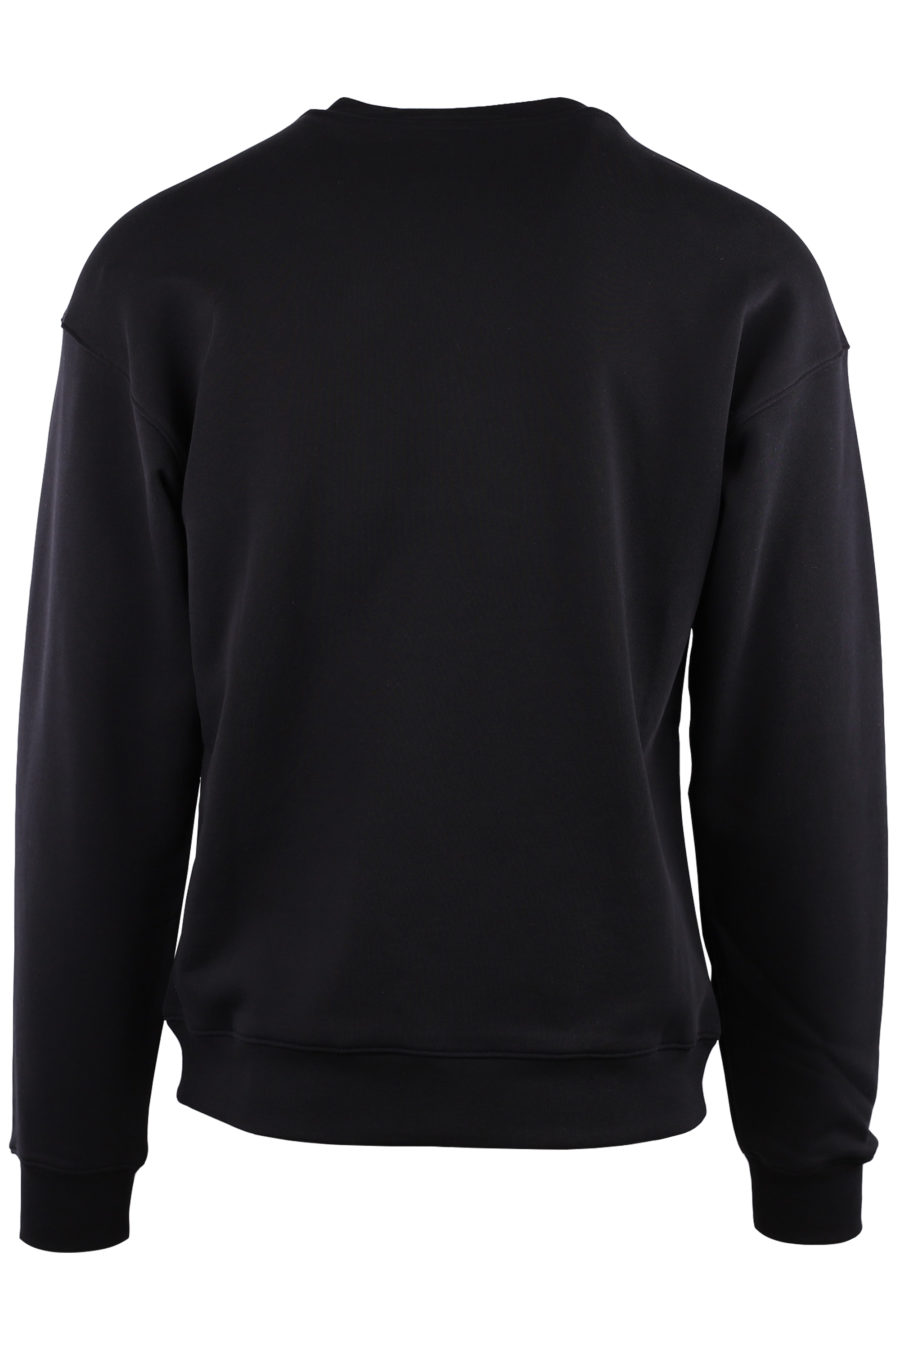 Black sweatshirt with white logo - af73b27024f7d5678da6b73a57a17667b937e84b